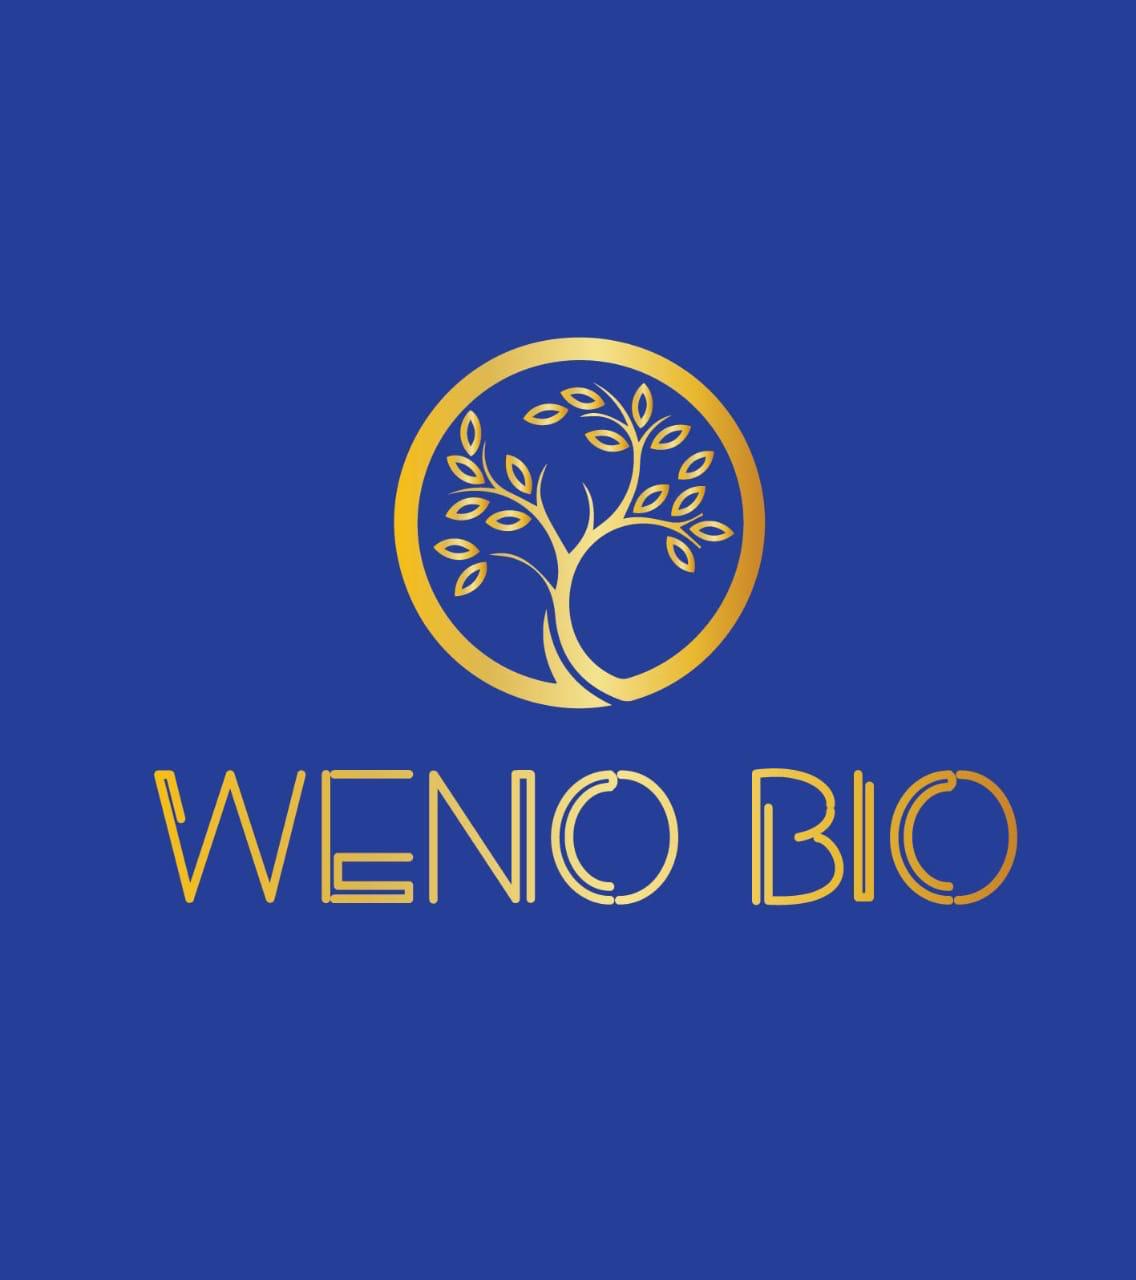 Création graphique pour Weno BIO